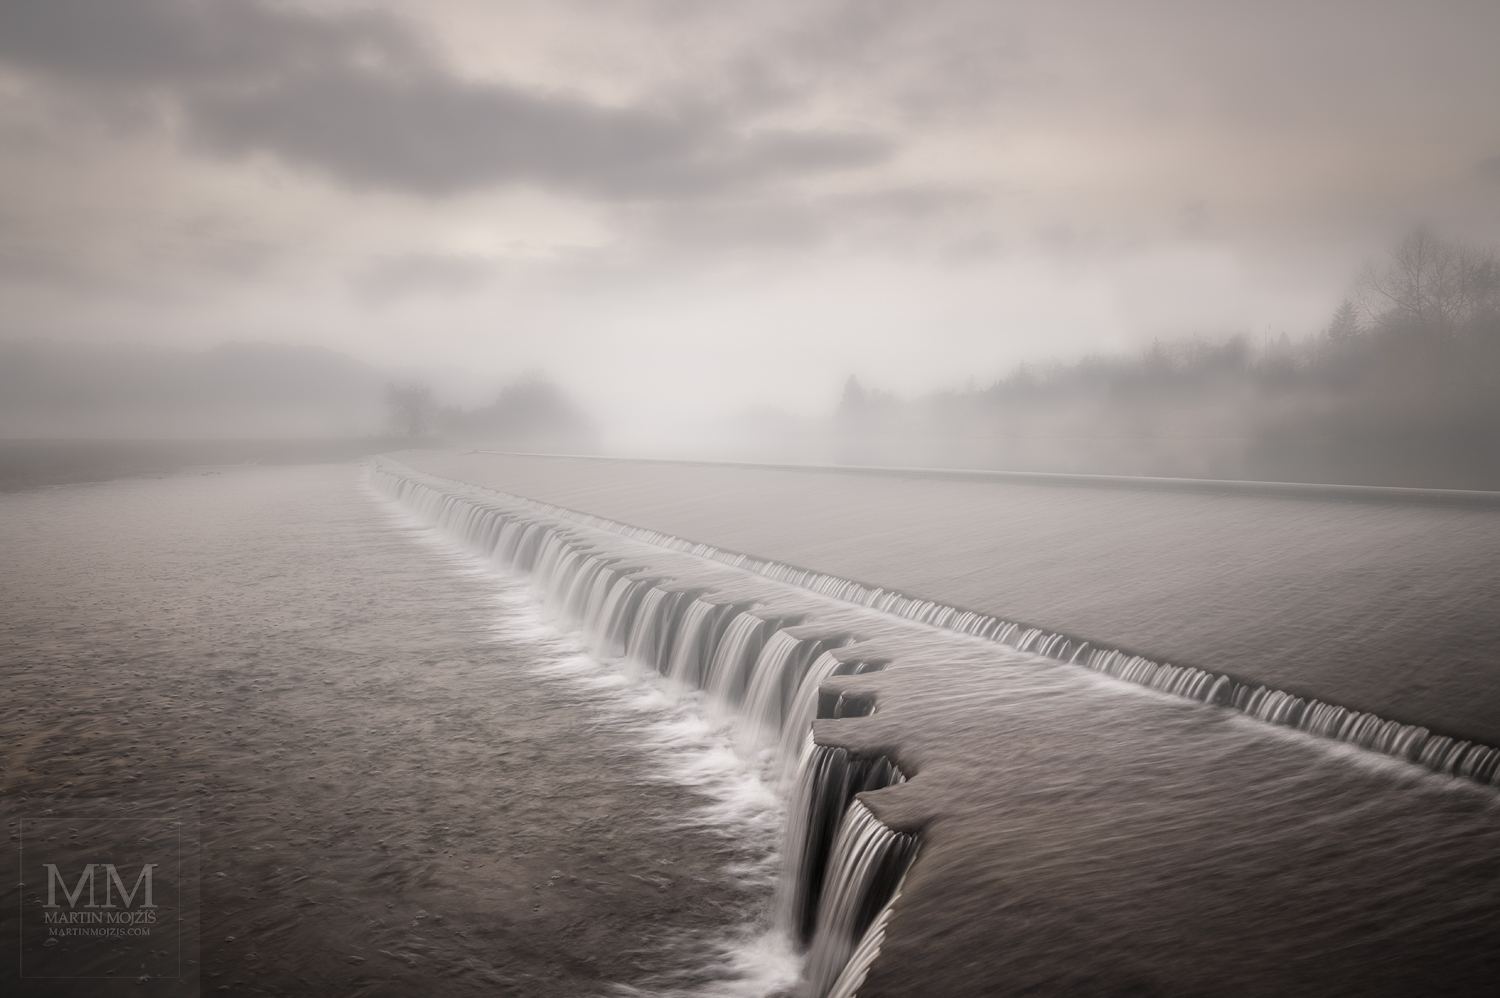 Velkoformátová umělecká fotografie mlhavé řeky.